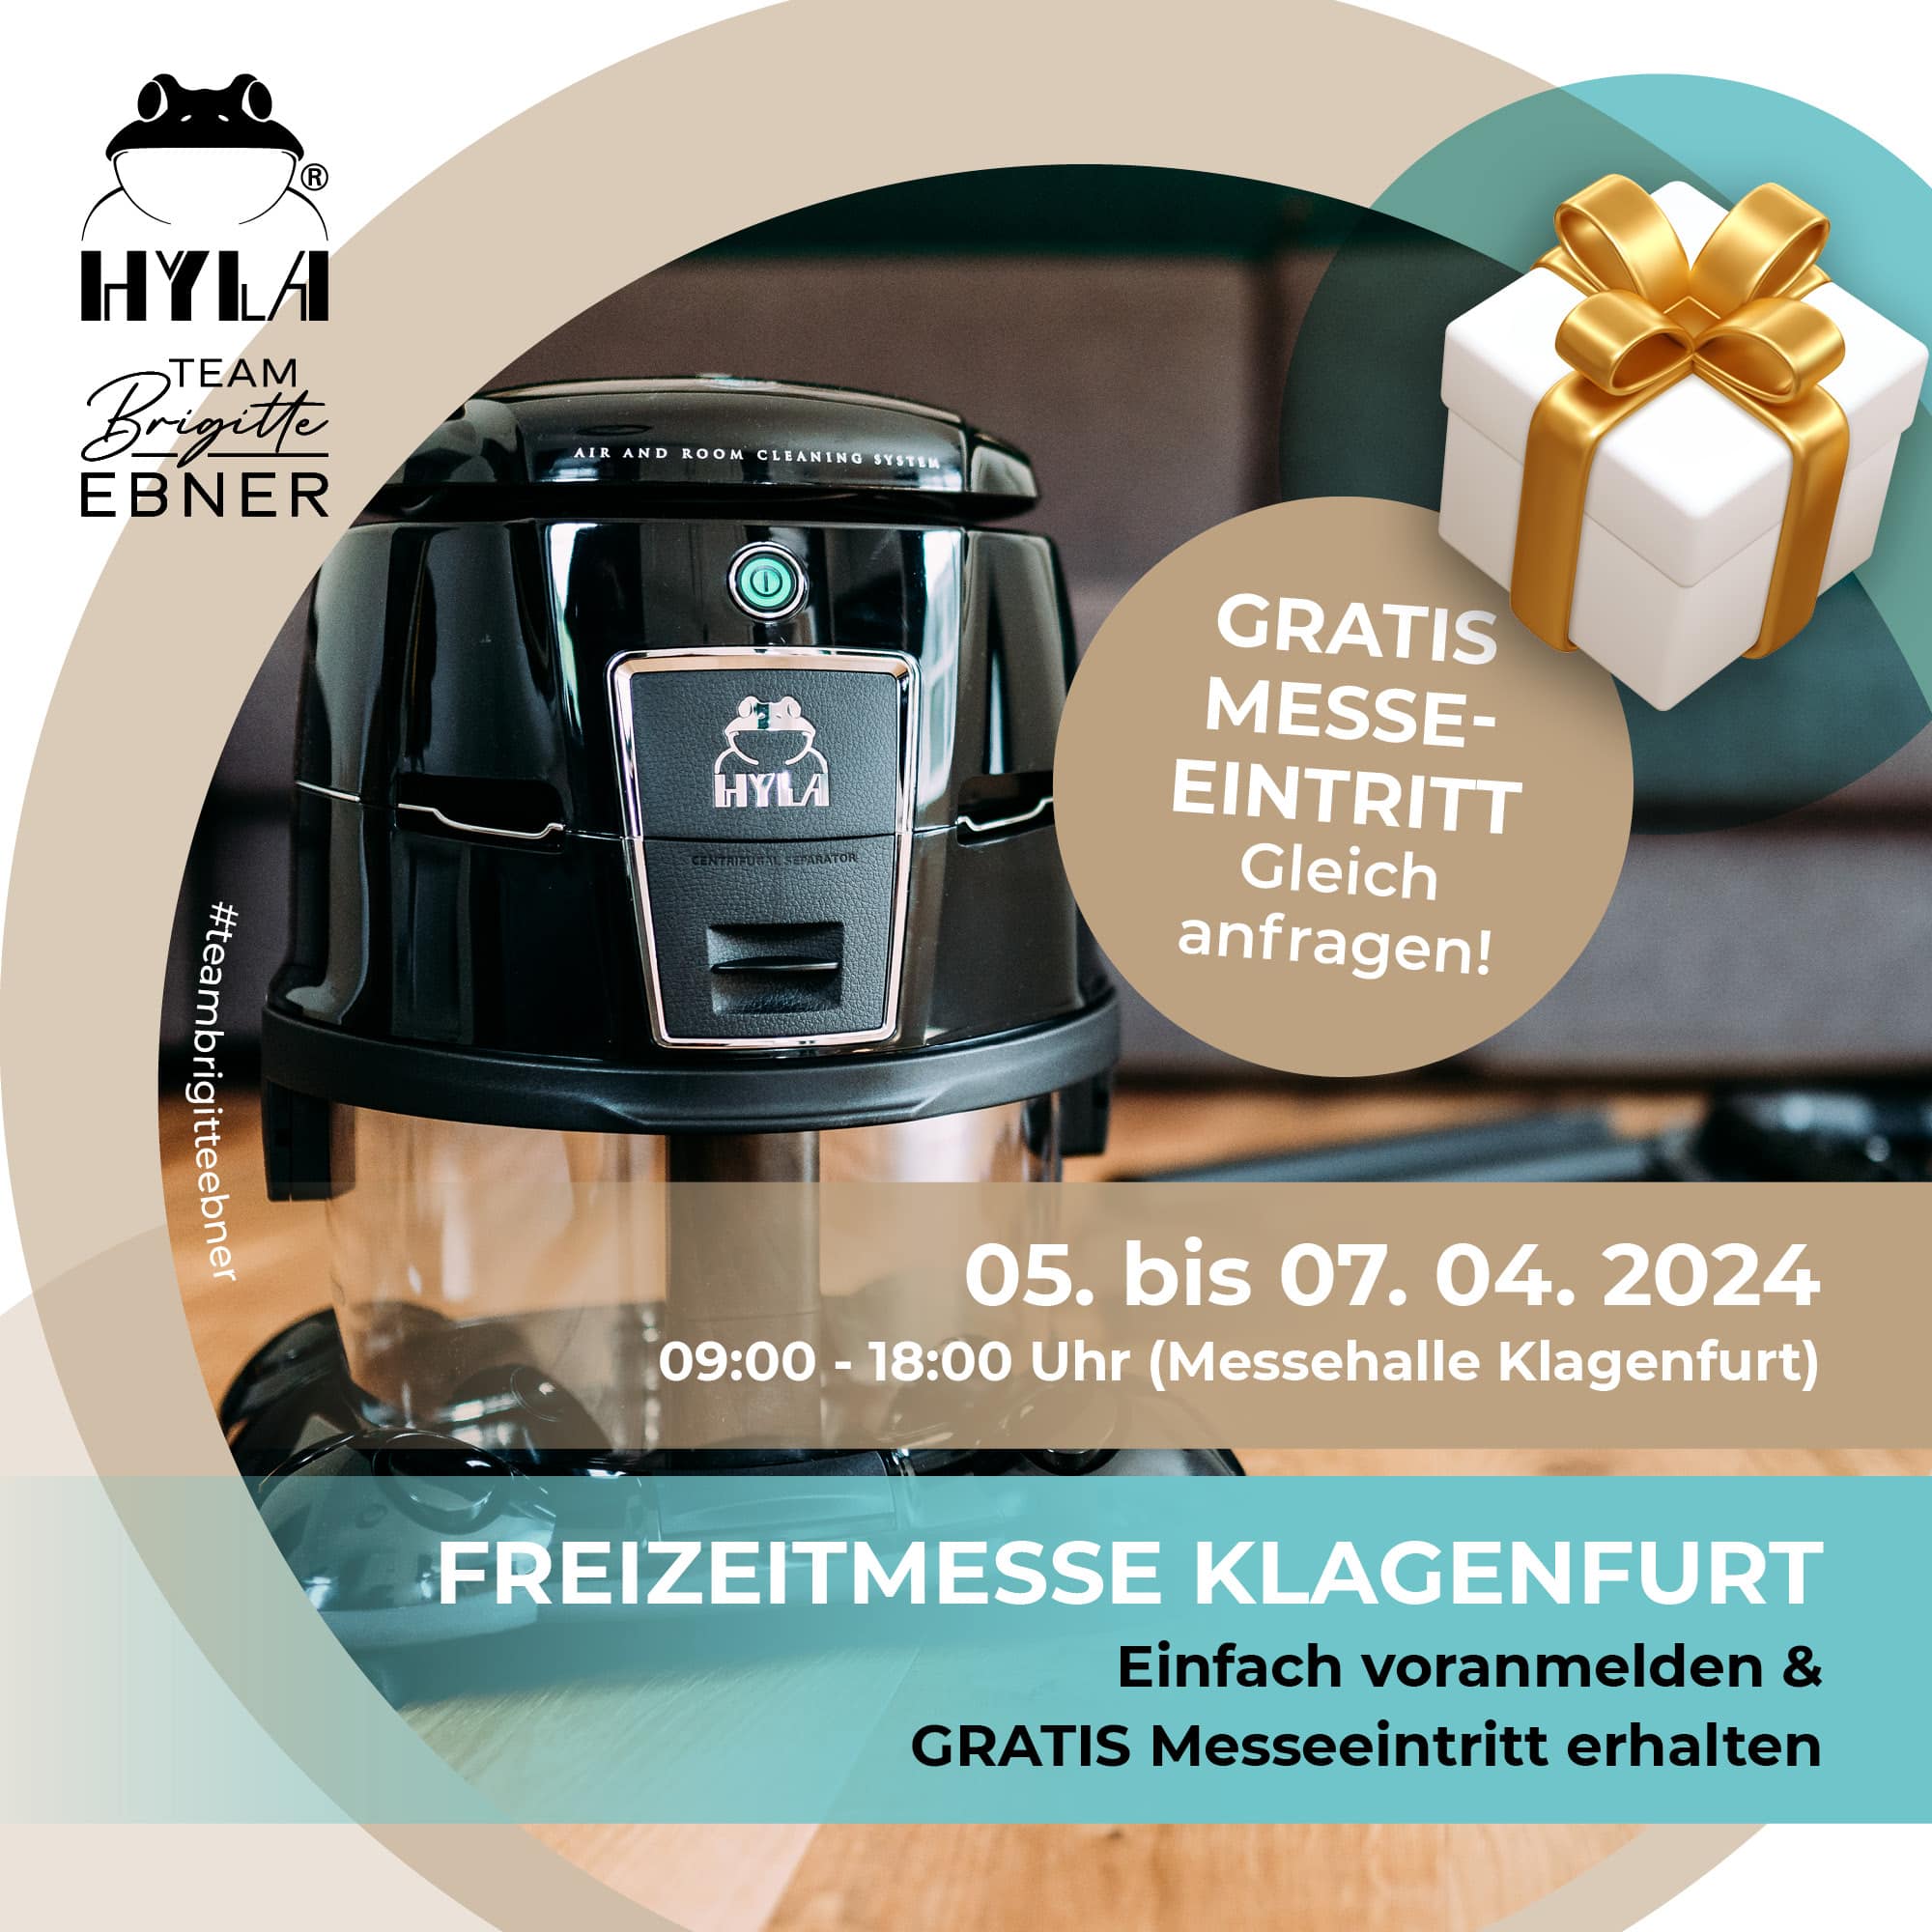 brigitte-ebner-hyla-freizeitmesse-2024-aktion